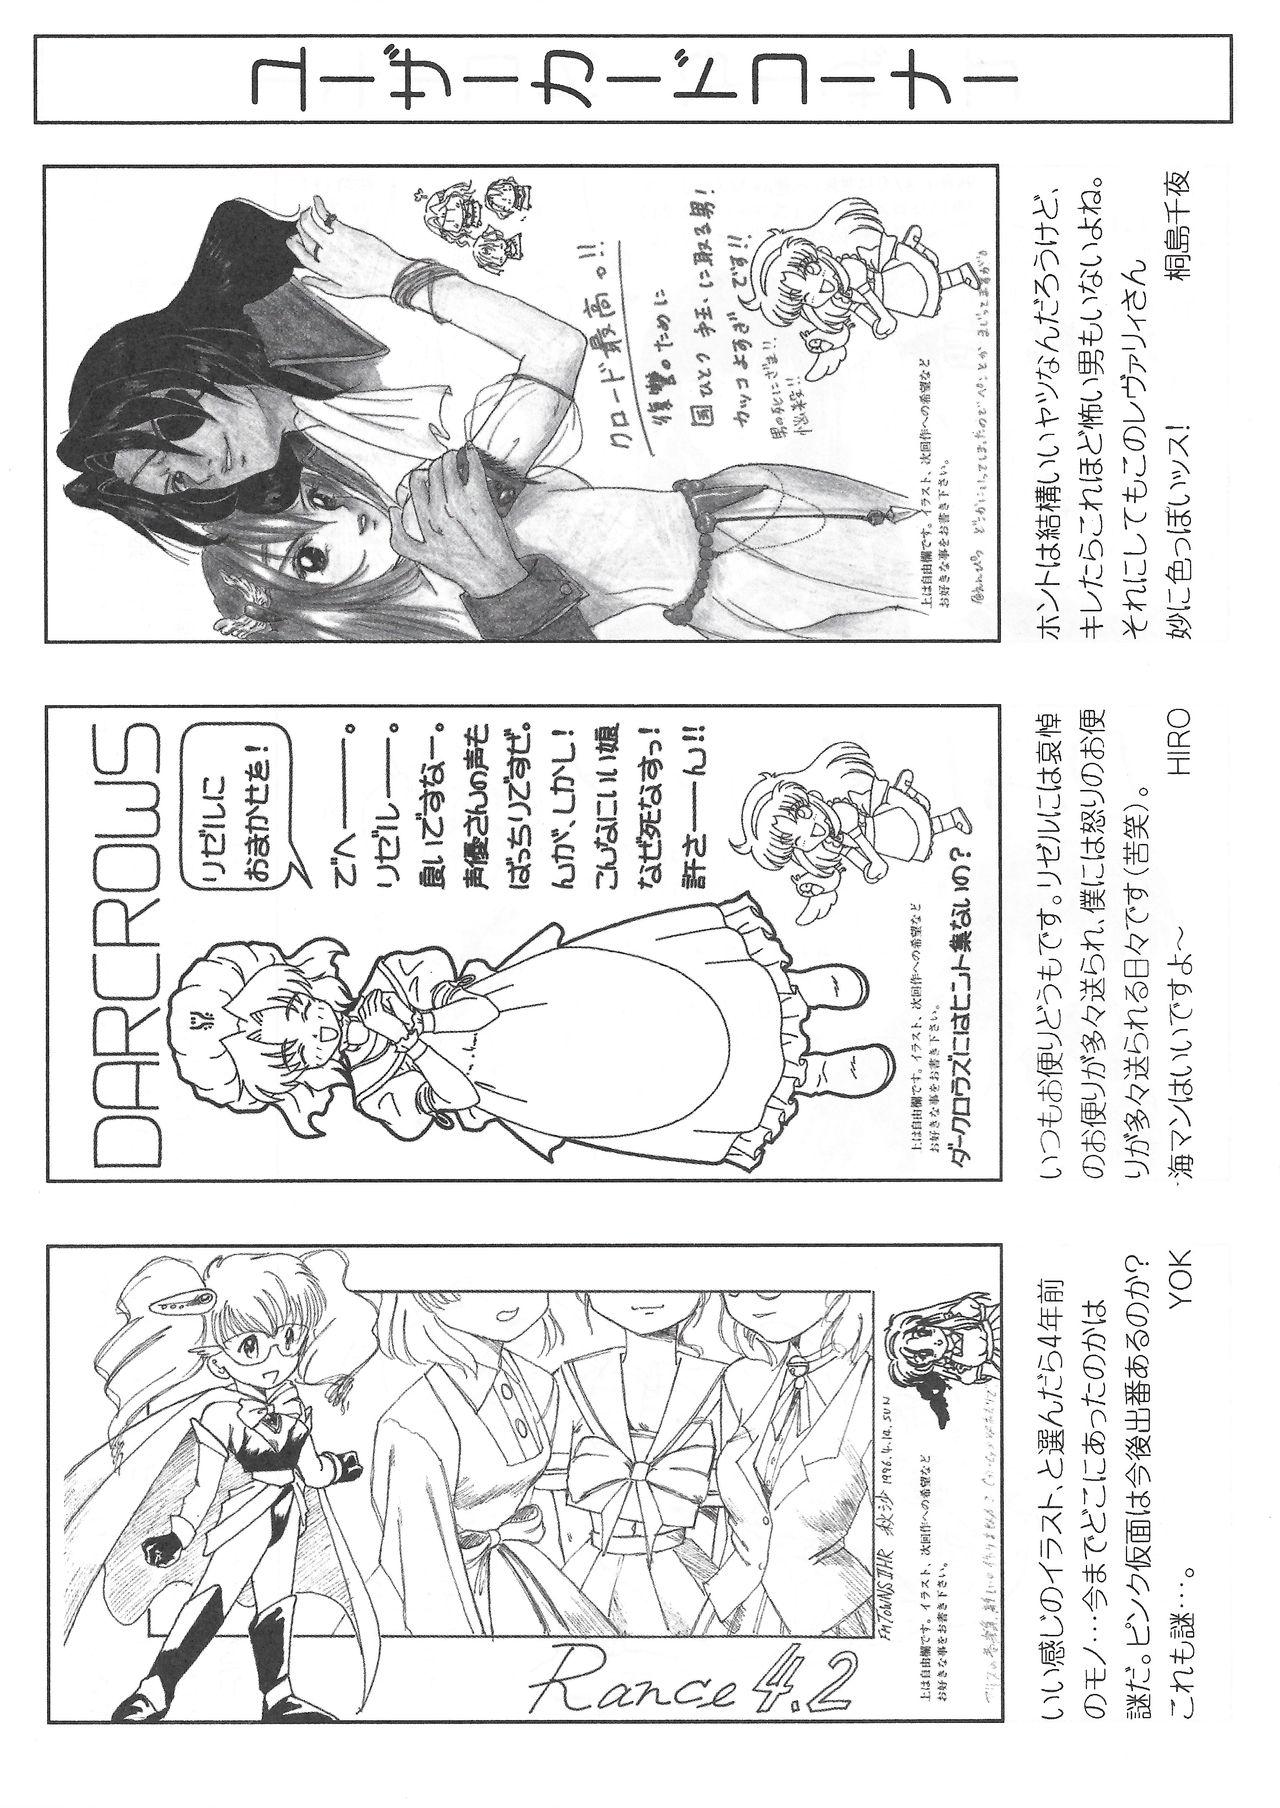 Arisu no Denchi Bakudan Vol. 11 25